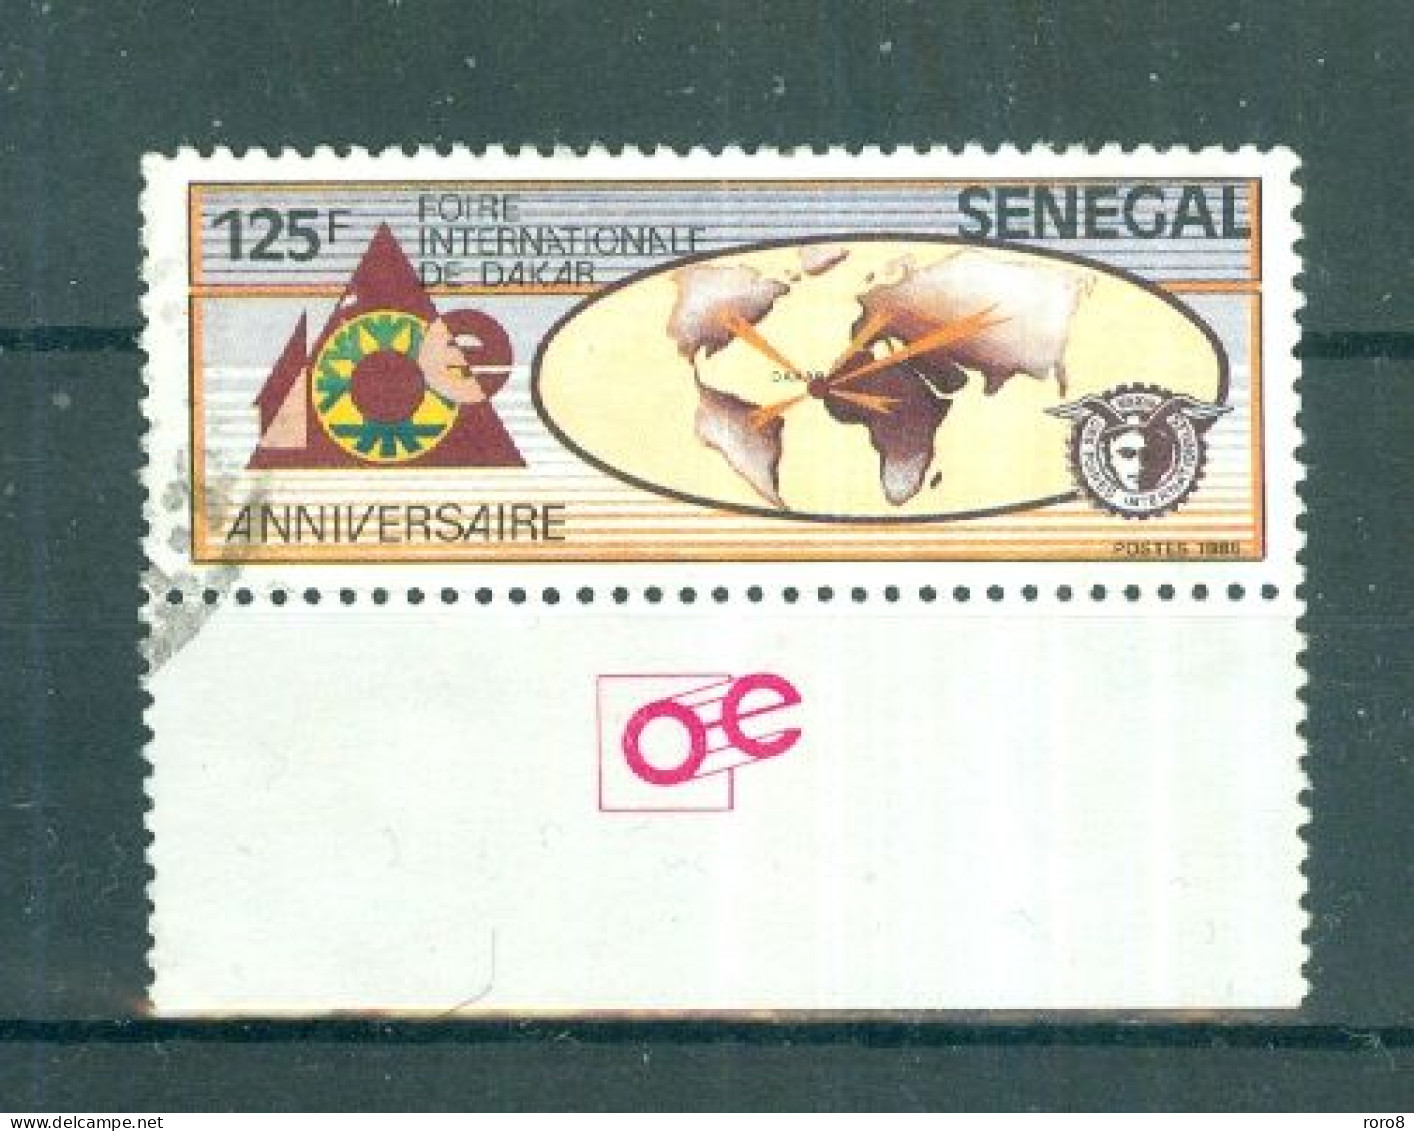 REPUBLIQUE DU SENEGAL - N°744 Oblitéré - Foire Internationale De Dakar. Bord De Feuille. - Sénégal (1960-...)